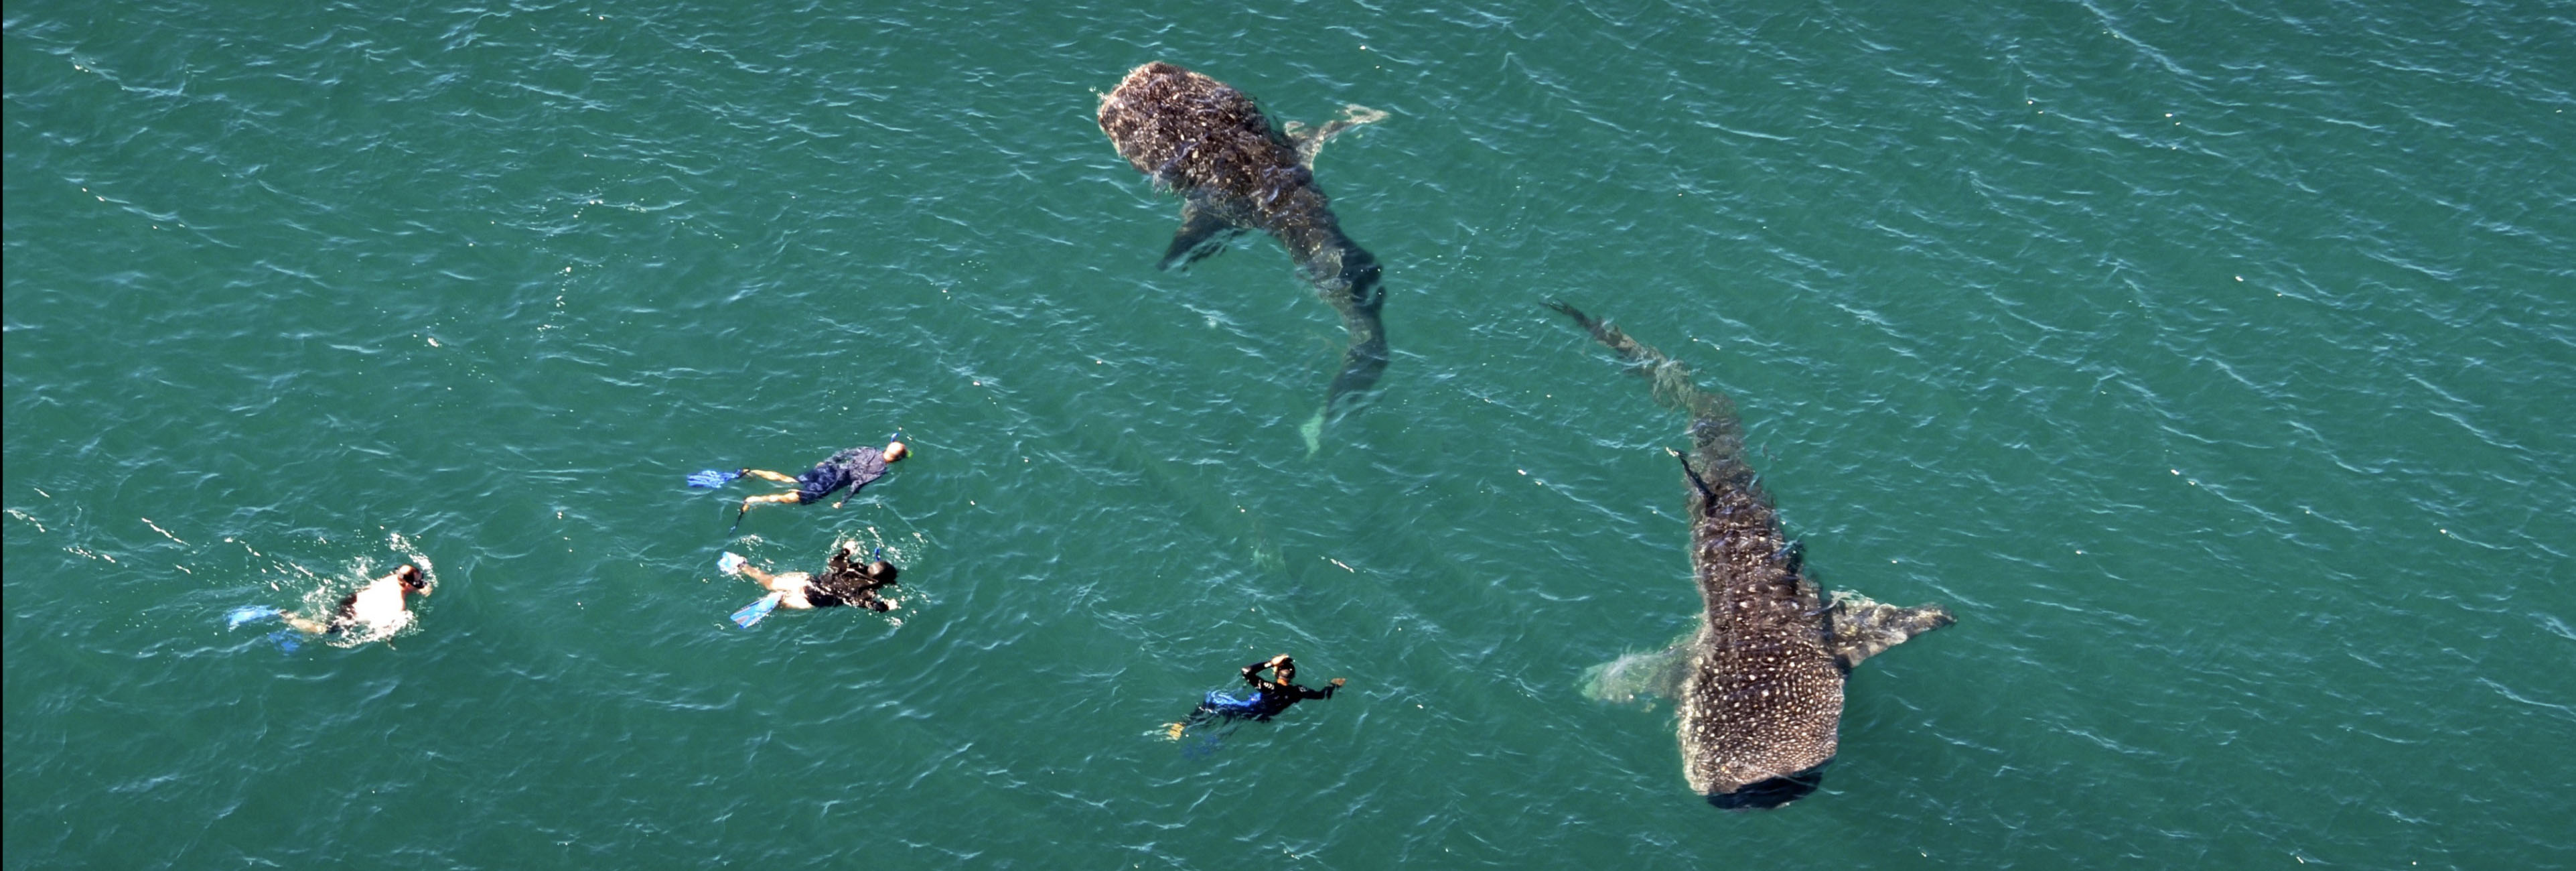 Vista aérea de personas nadando junto a dos tiburones ballena